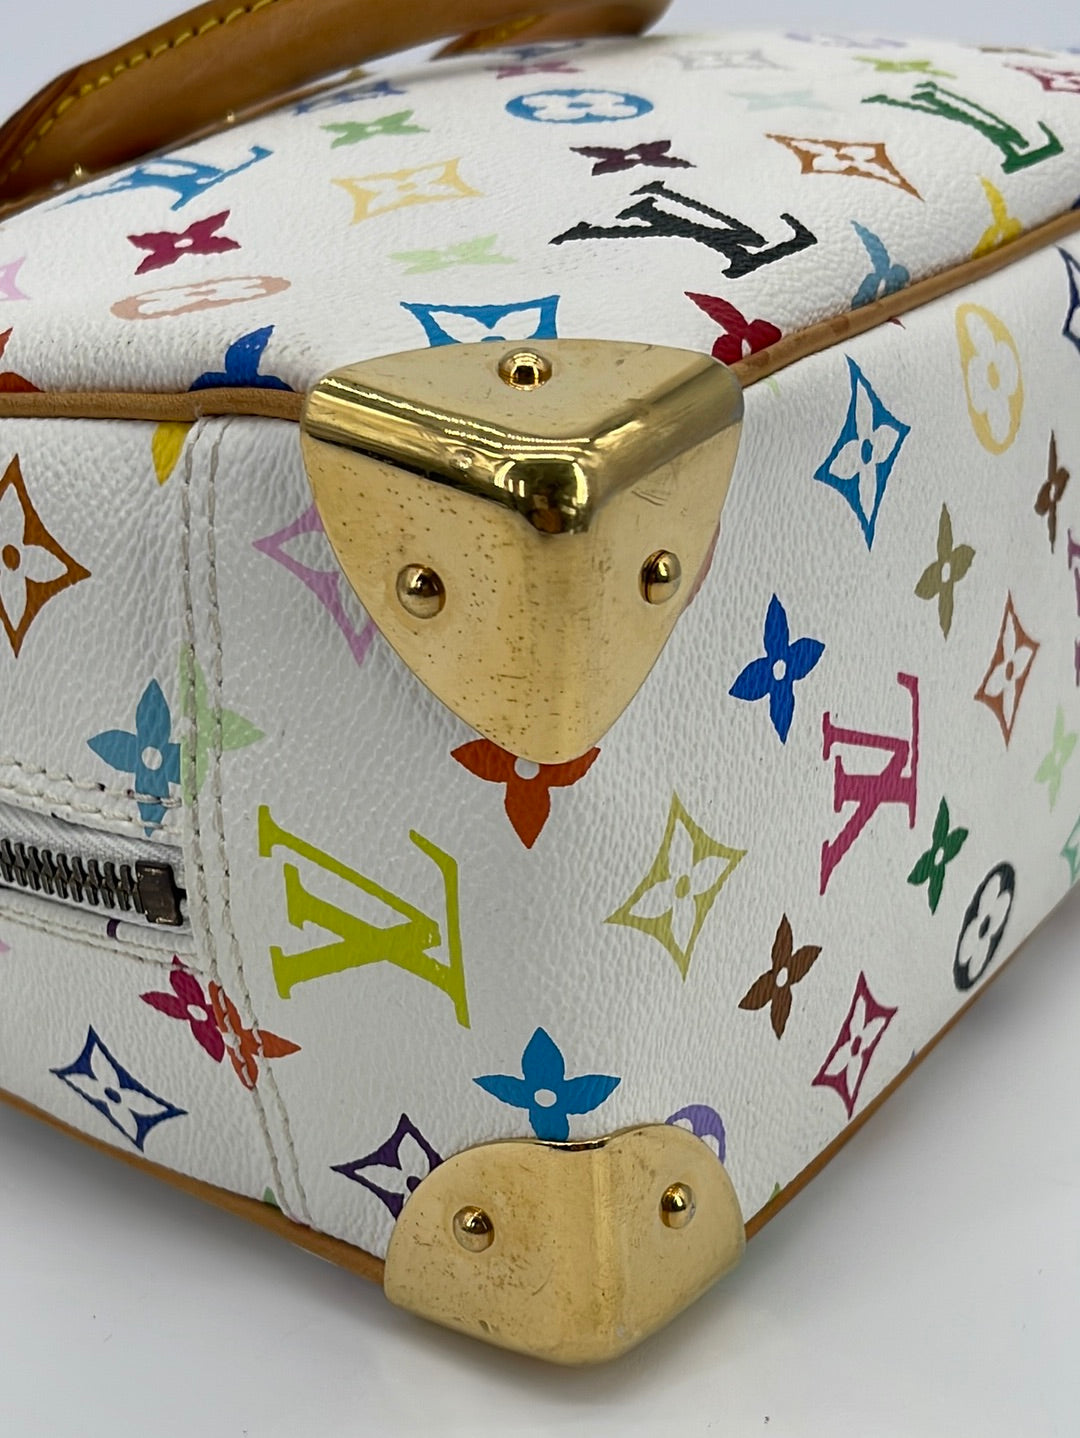 LOUIS VUITTON Monogram Trouville Hand Bag LV MI0010 – LuxuryPromise